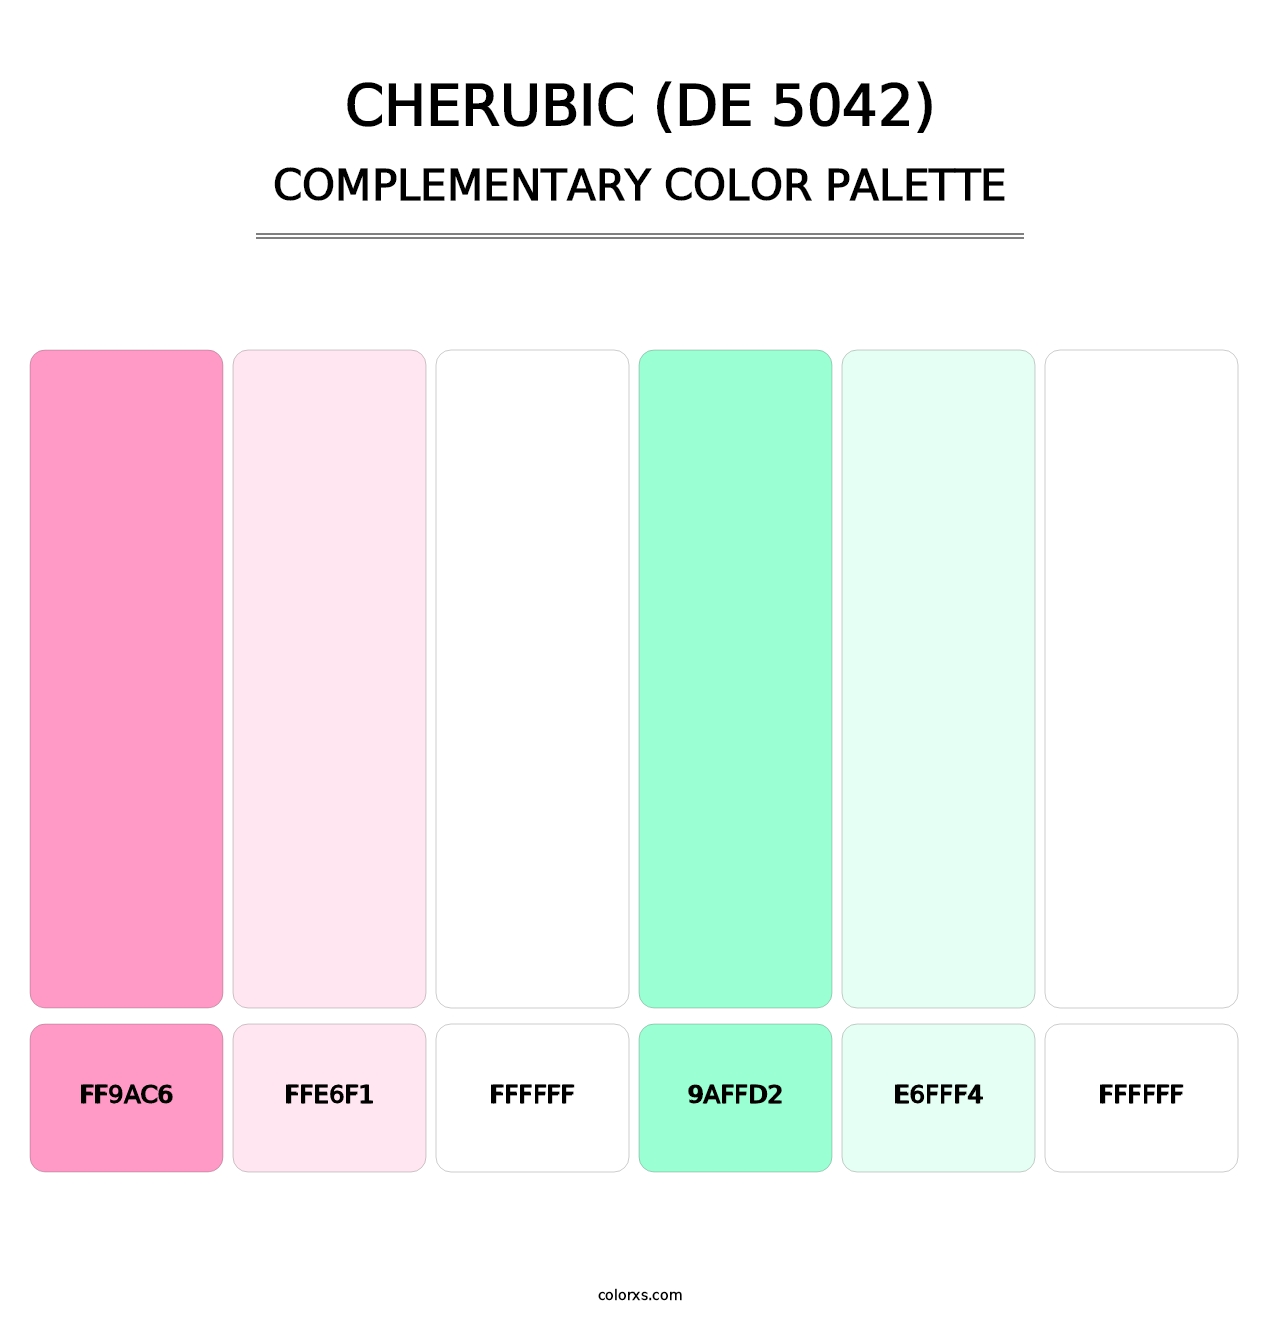 Cherubic (DE 5042) - Complementary Color Palette